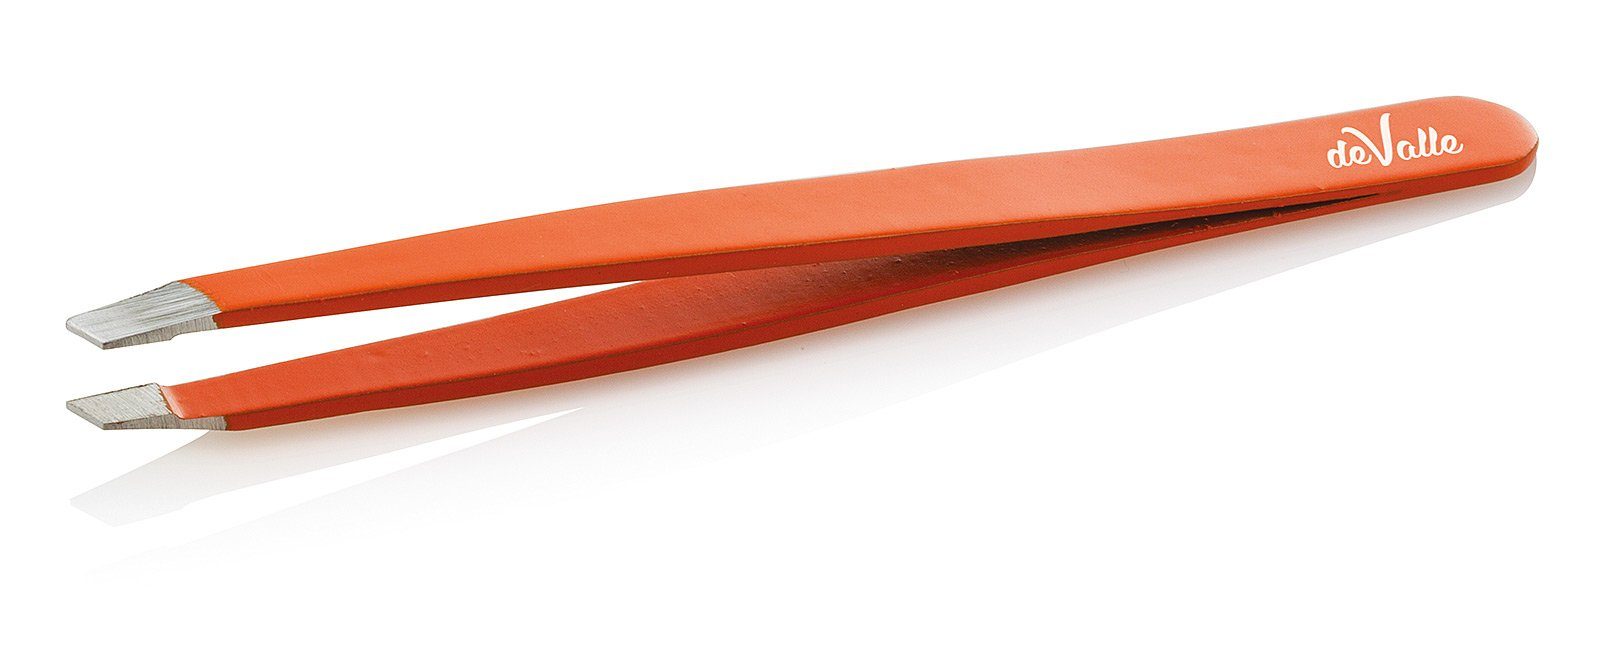 Koskaderm Pinzette Augenbrauenpinzette, farbig, 9.5 cm, deValle Orange